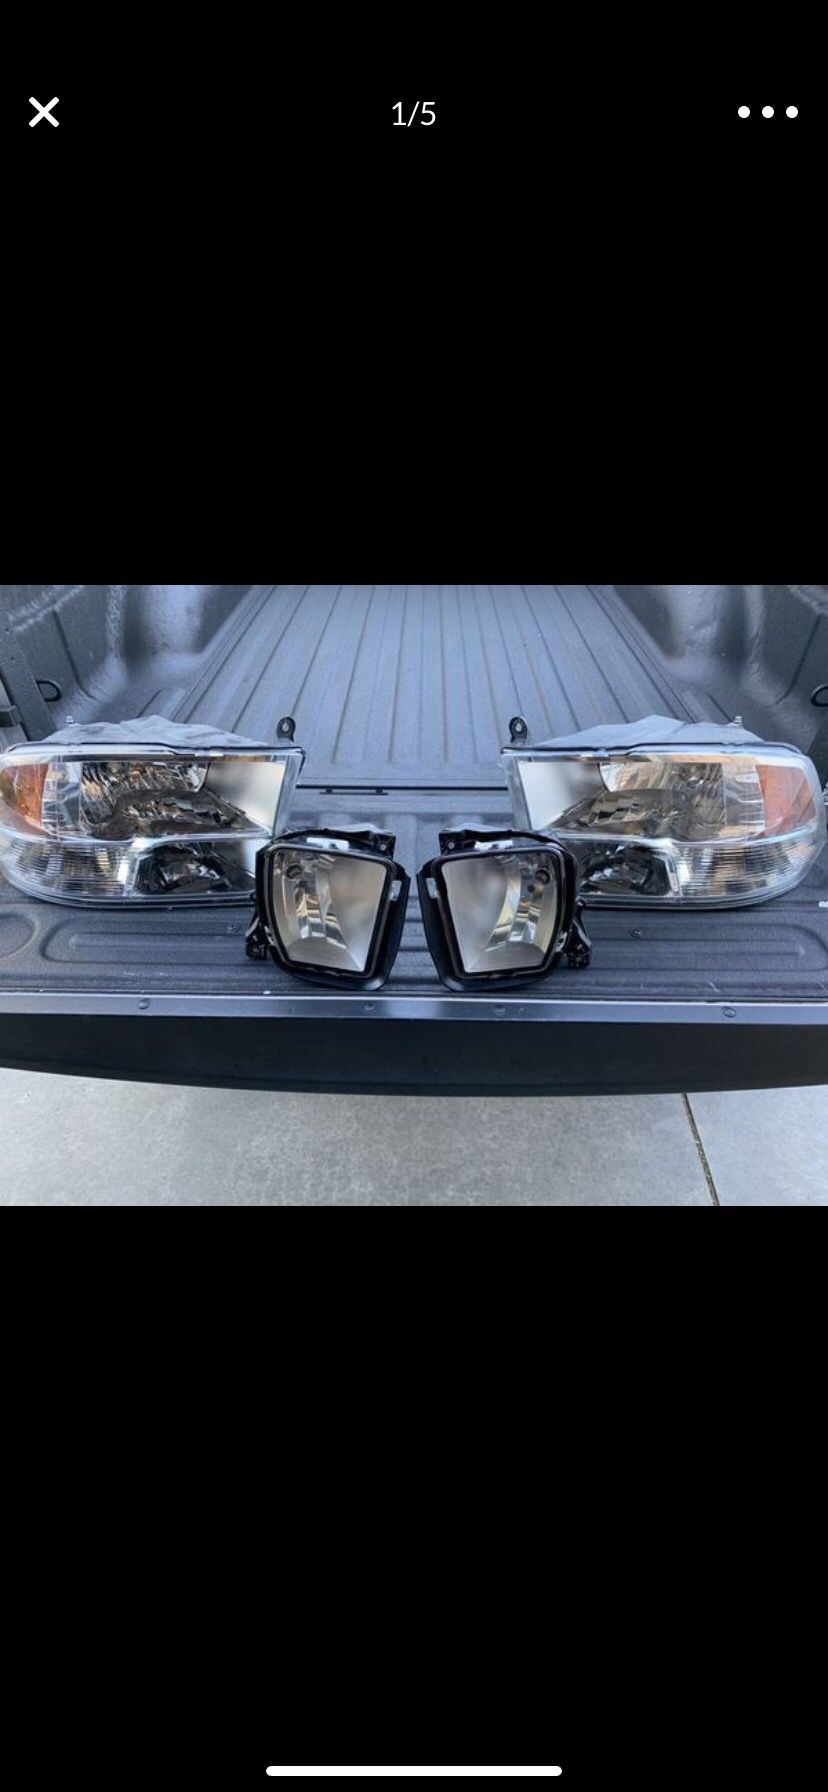 2017 Dodge Ram oem mopar lights